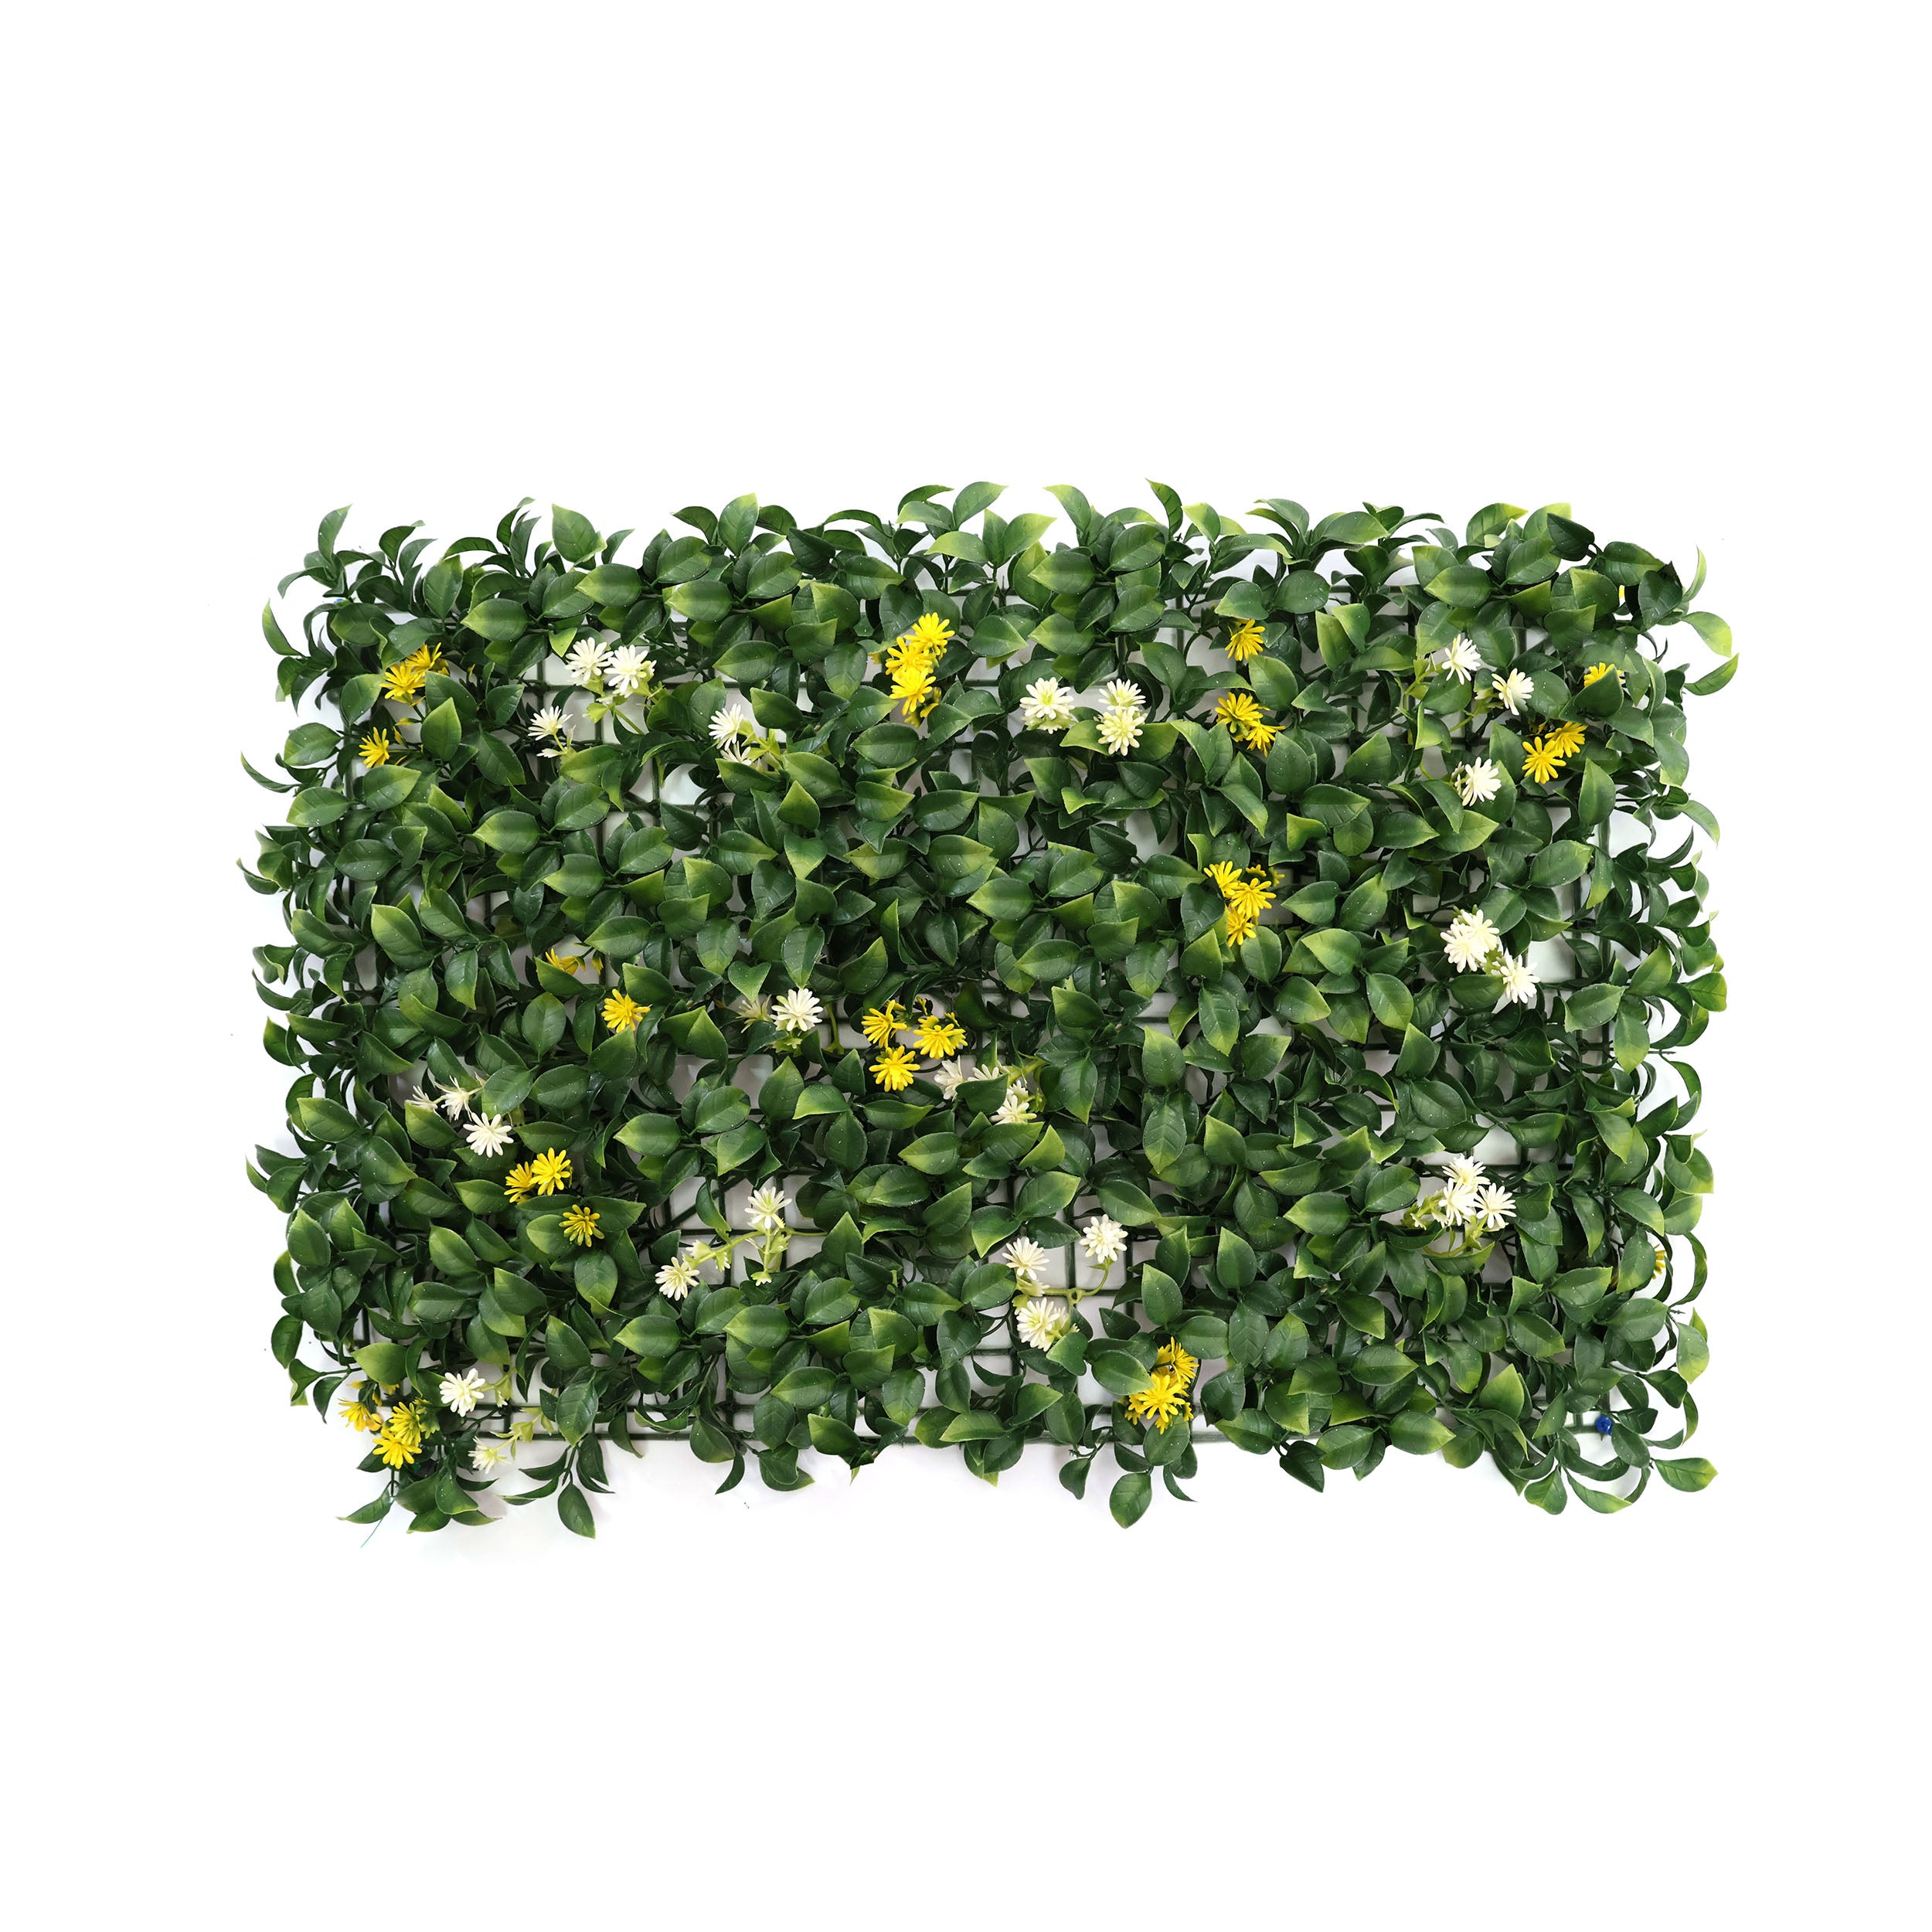 Aavana Greens Artificial Vertical Garden Wall Panel 40X60 CM